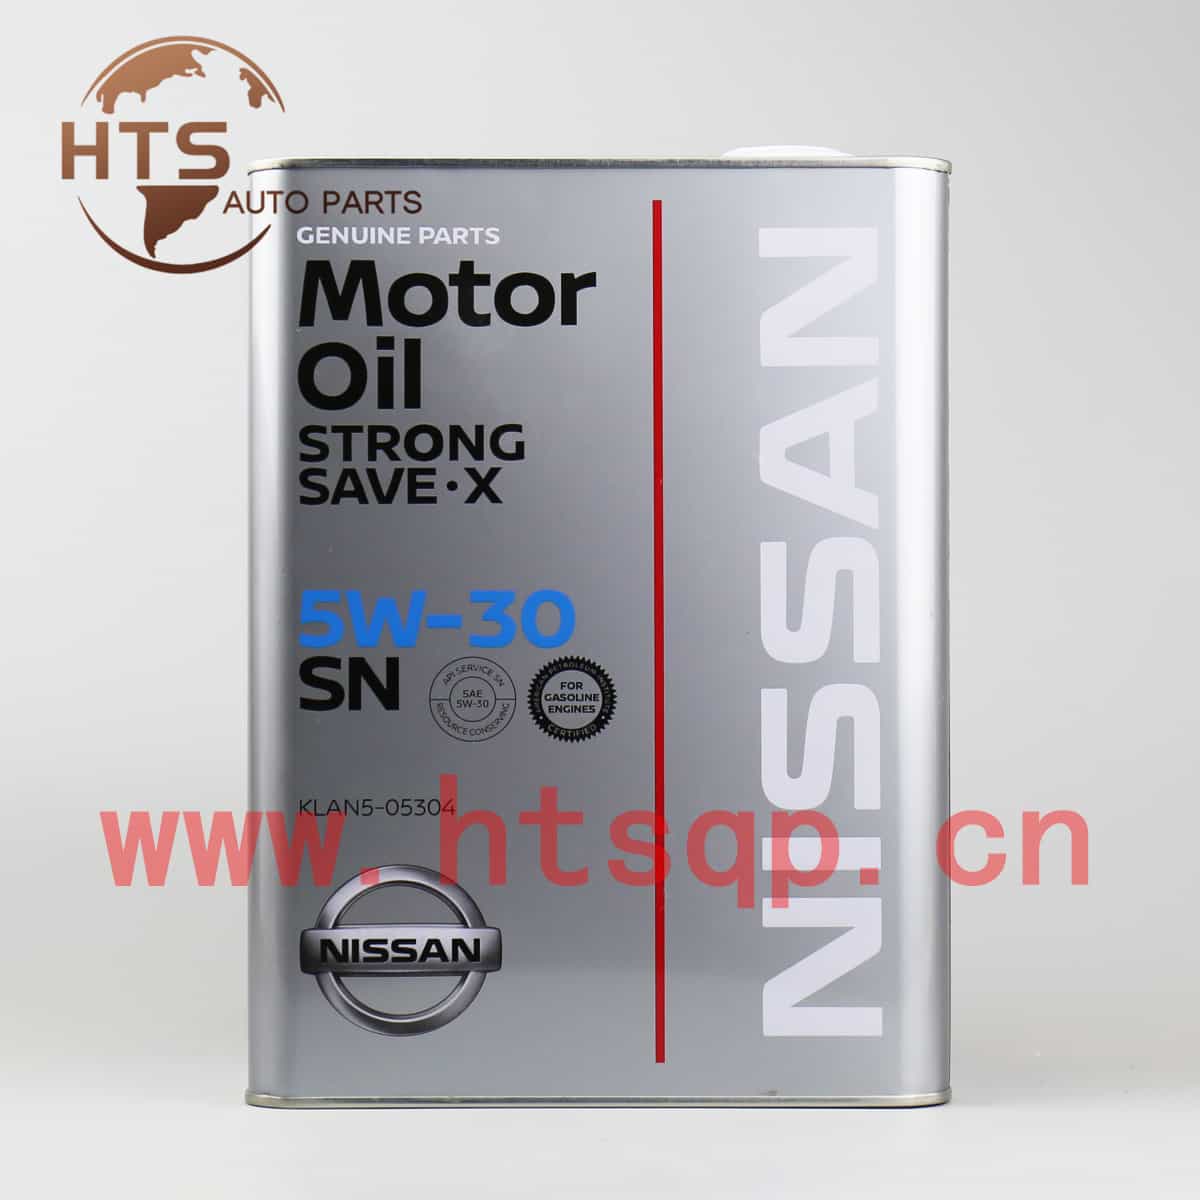 KLAN505304/NISSAN/SN/5W-30/日产/发动机油/KLAN5-05304/4L